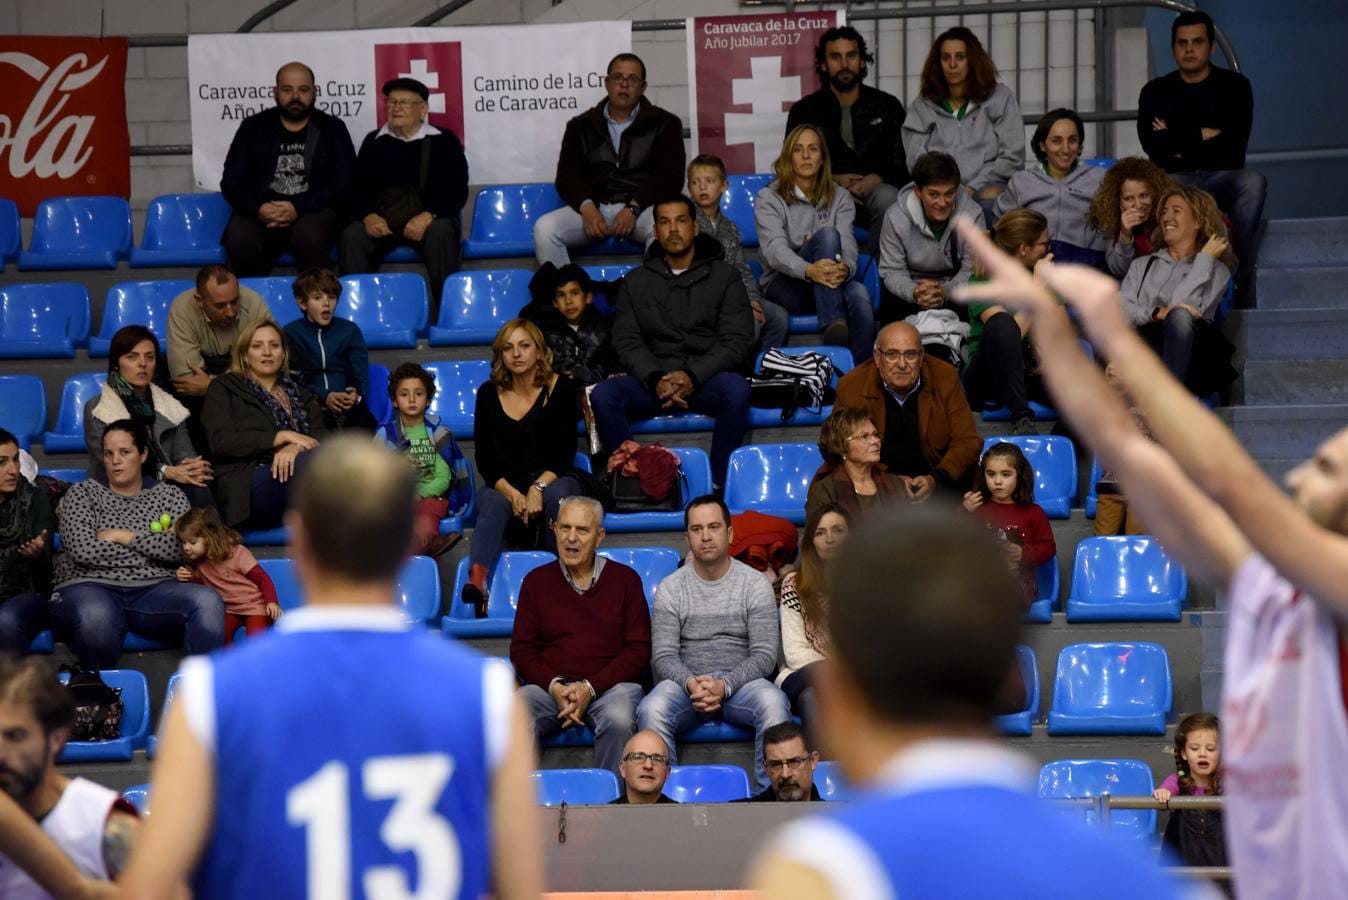 La organización apuesta por una segunda edición de este torneo de baloncesto para veteranos que ha reunido en Murcia a 26 equipos, 9 países y 15 nacionalidades